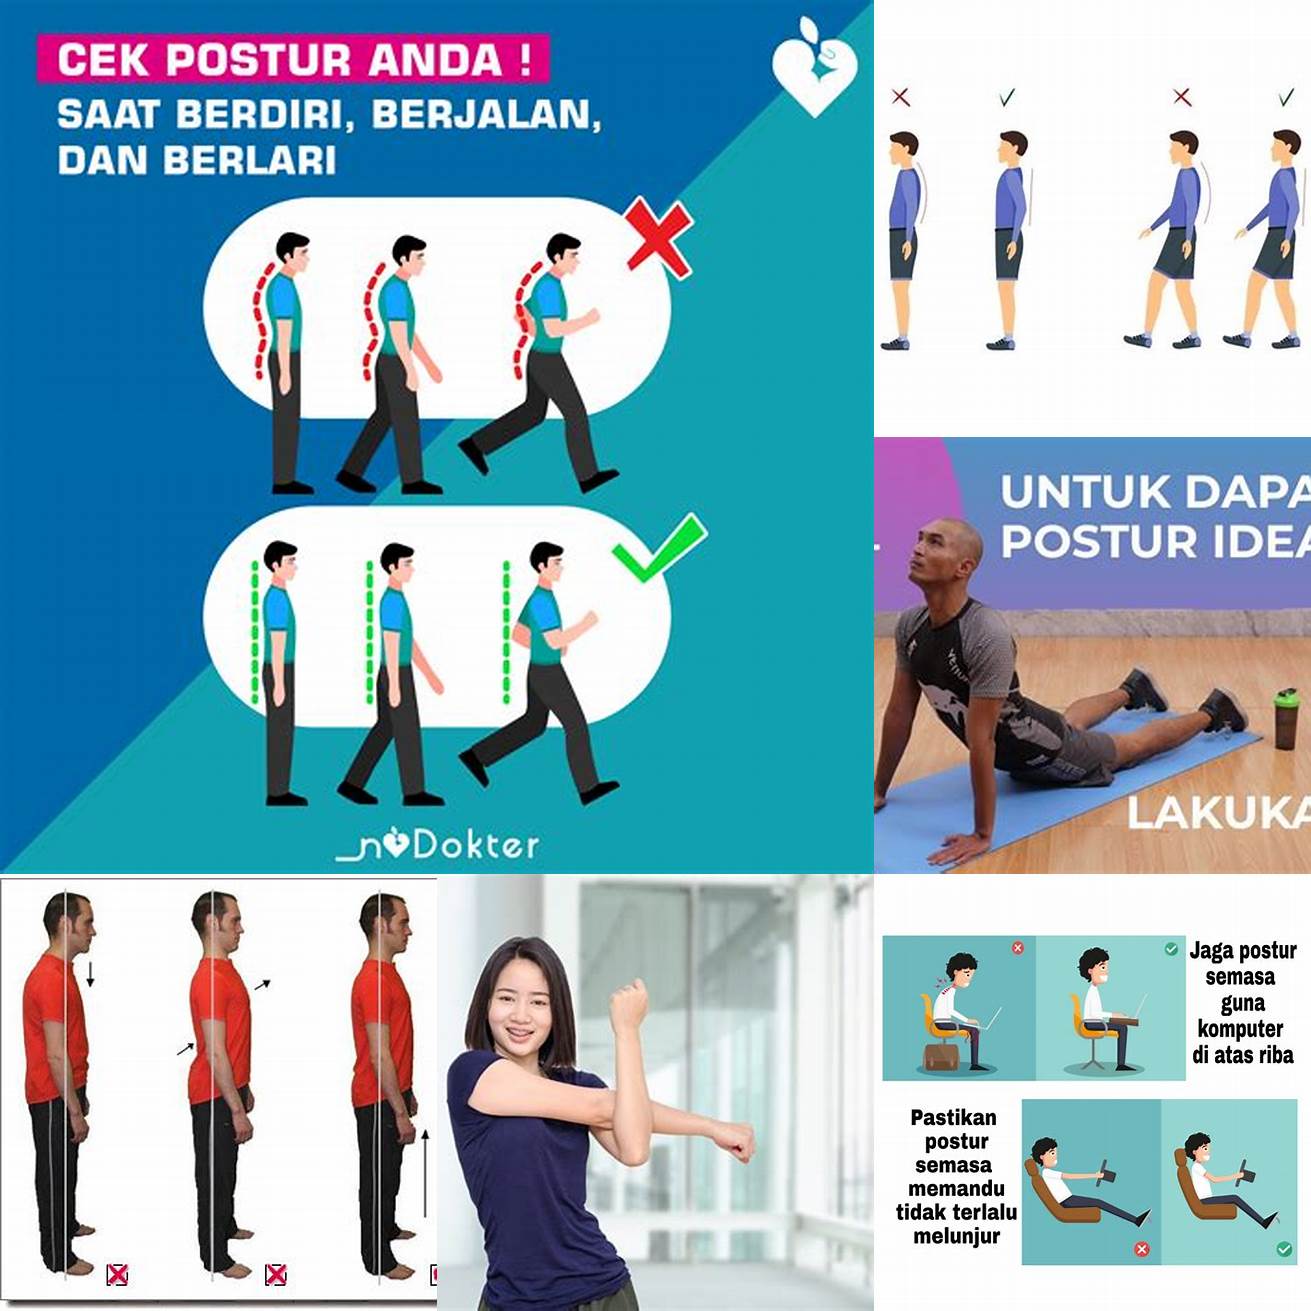 Pastikan untuk tetap menjaga postur tubuh yang benar sepanjang gerakan